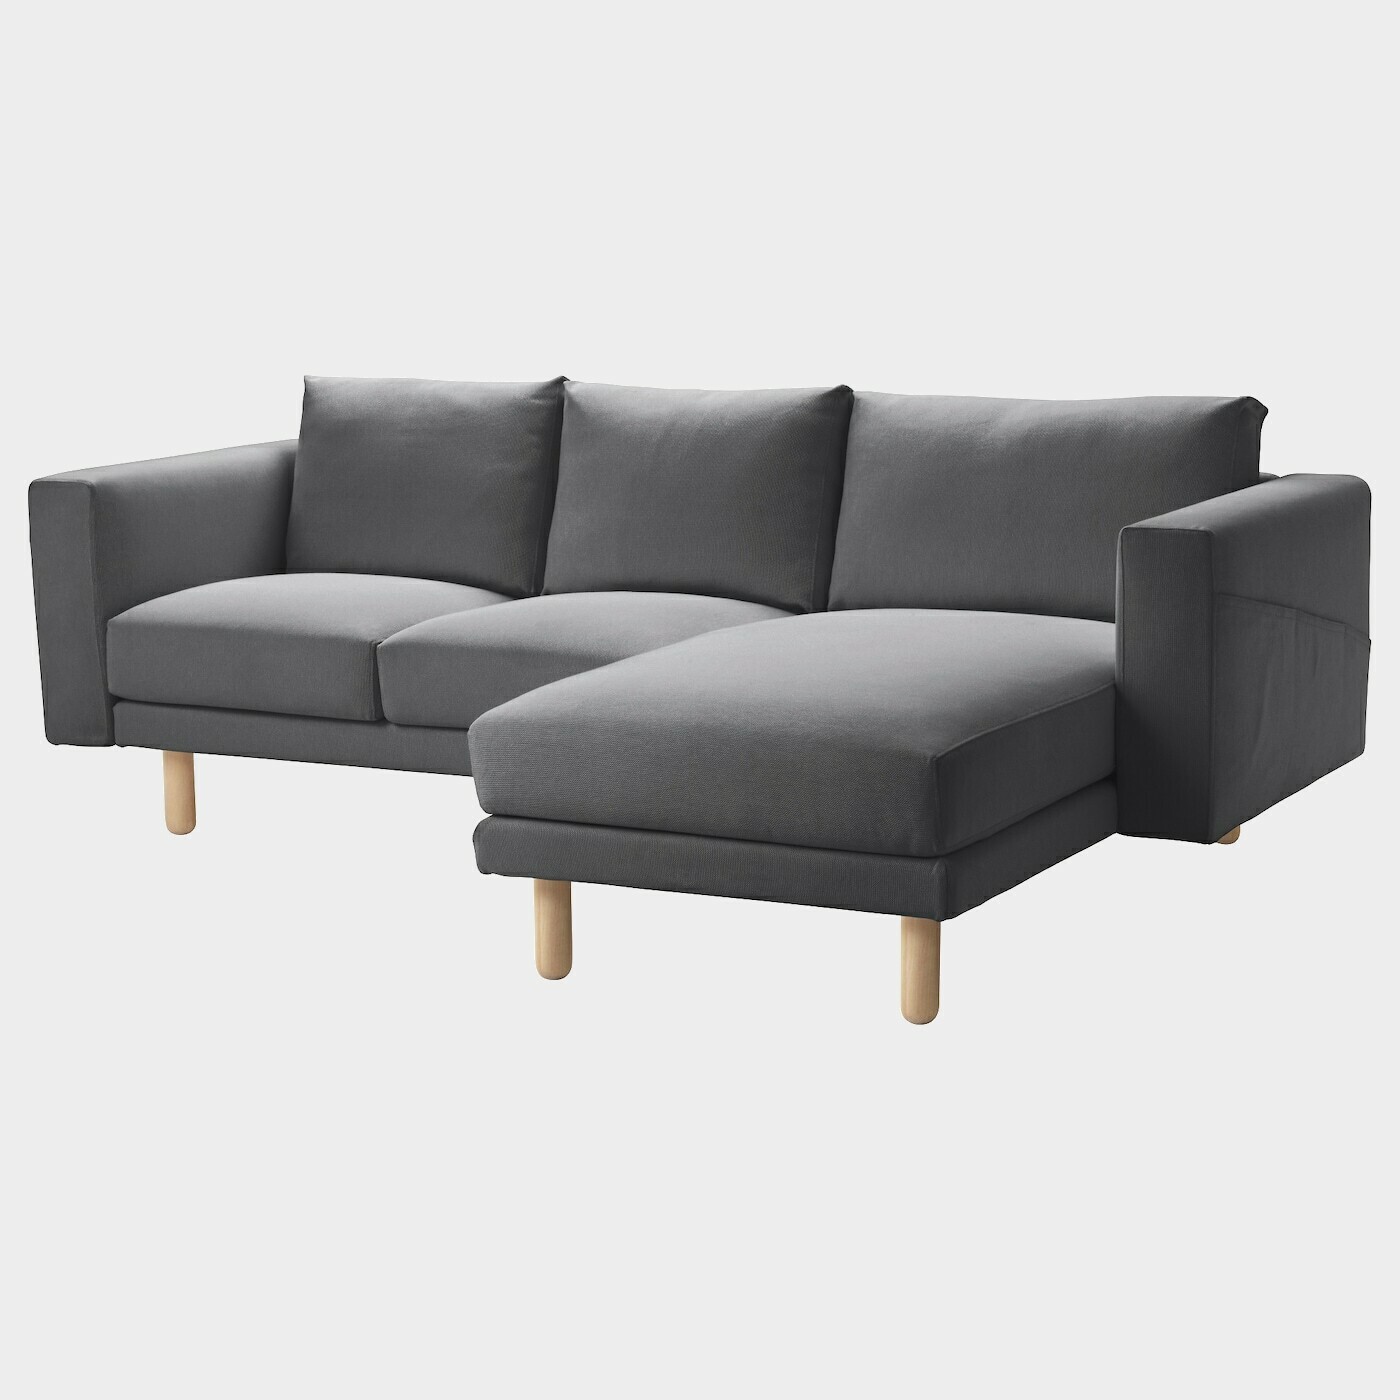 NORSBORG 3er-Sofa  - Sofas, Textil - Möbel Ideen für dein Zuhause von Home Trends. Möbel Trends von Social Media Influencer für dein Skandi Zuhause.